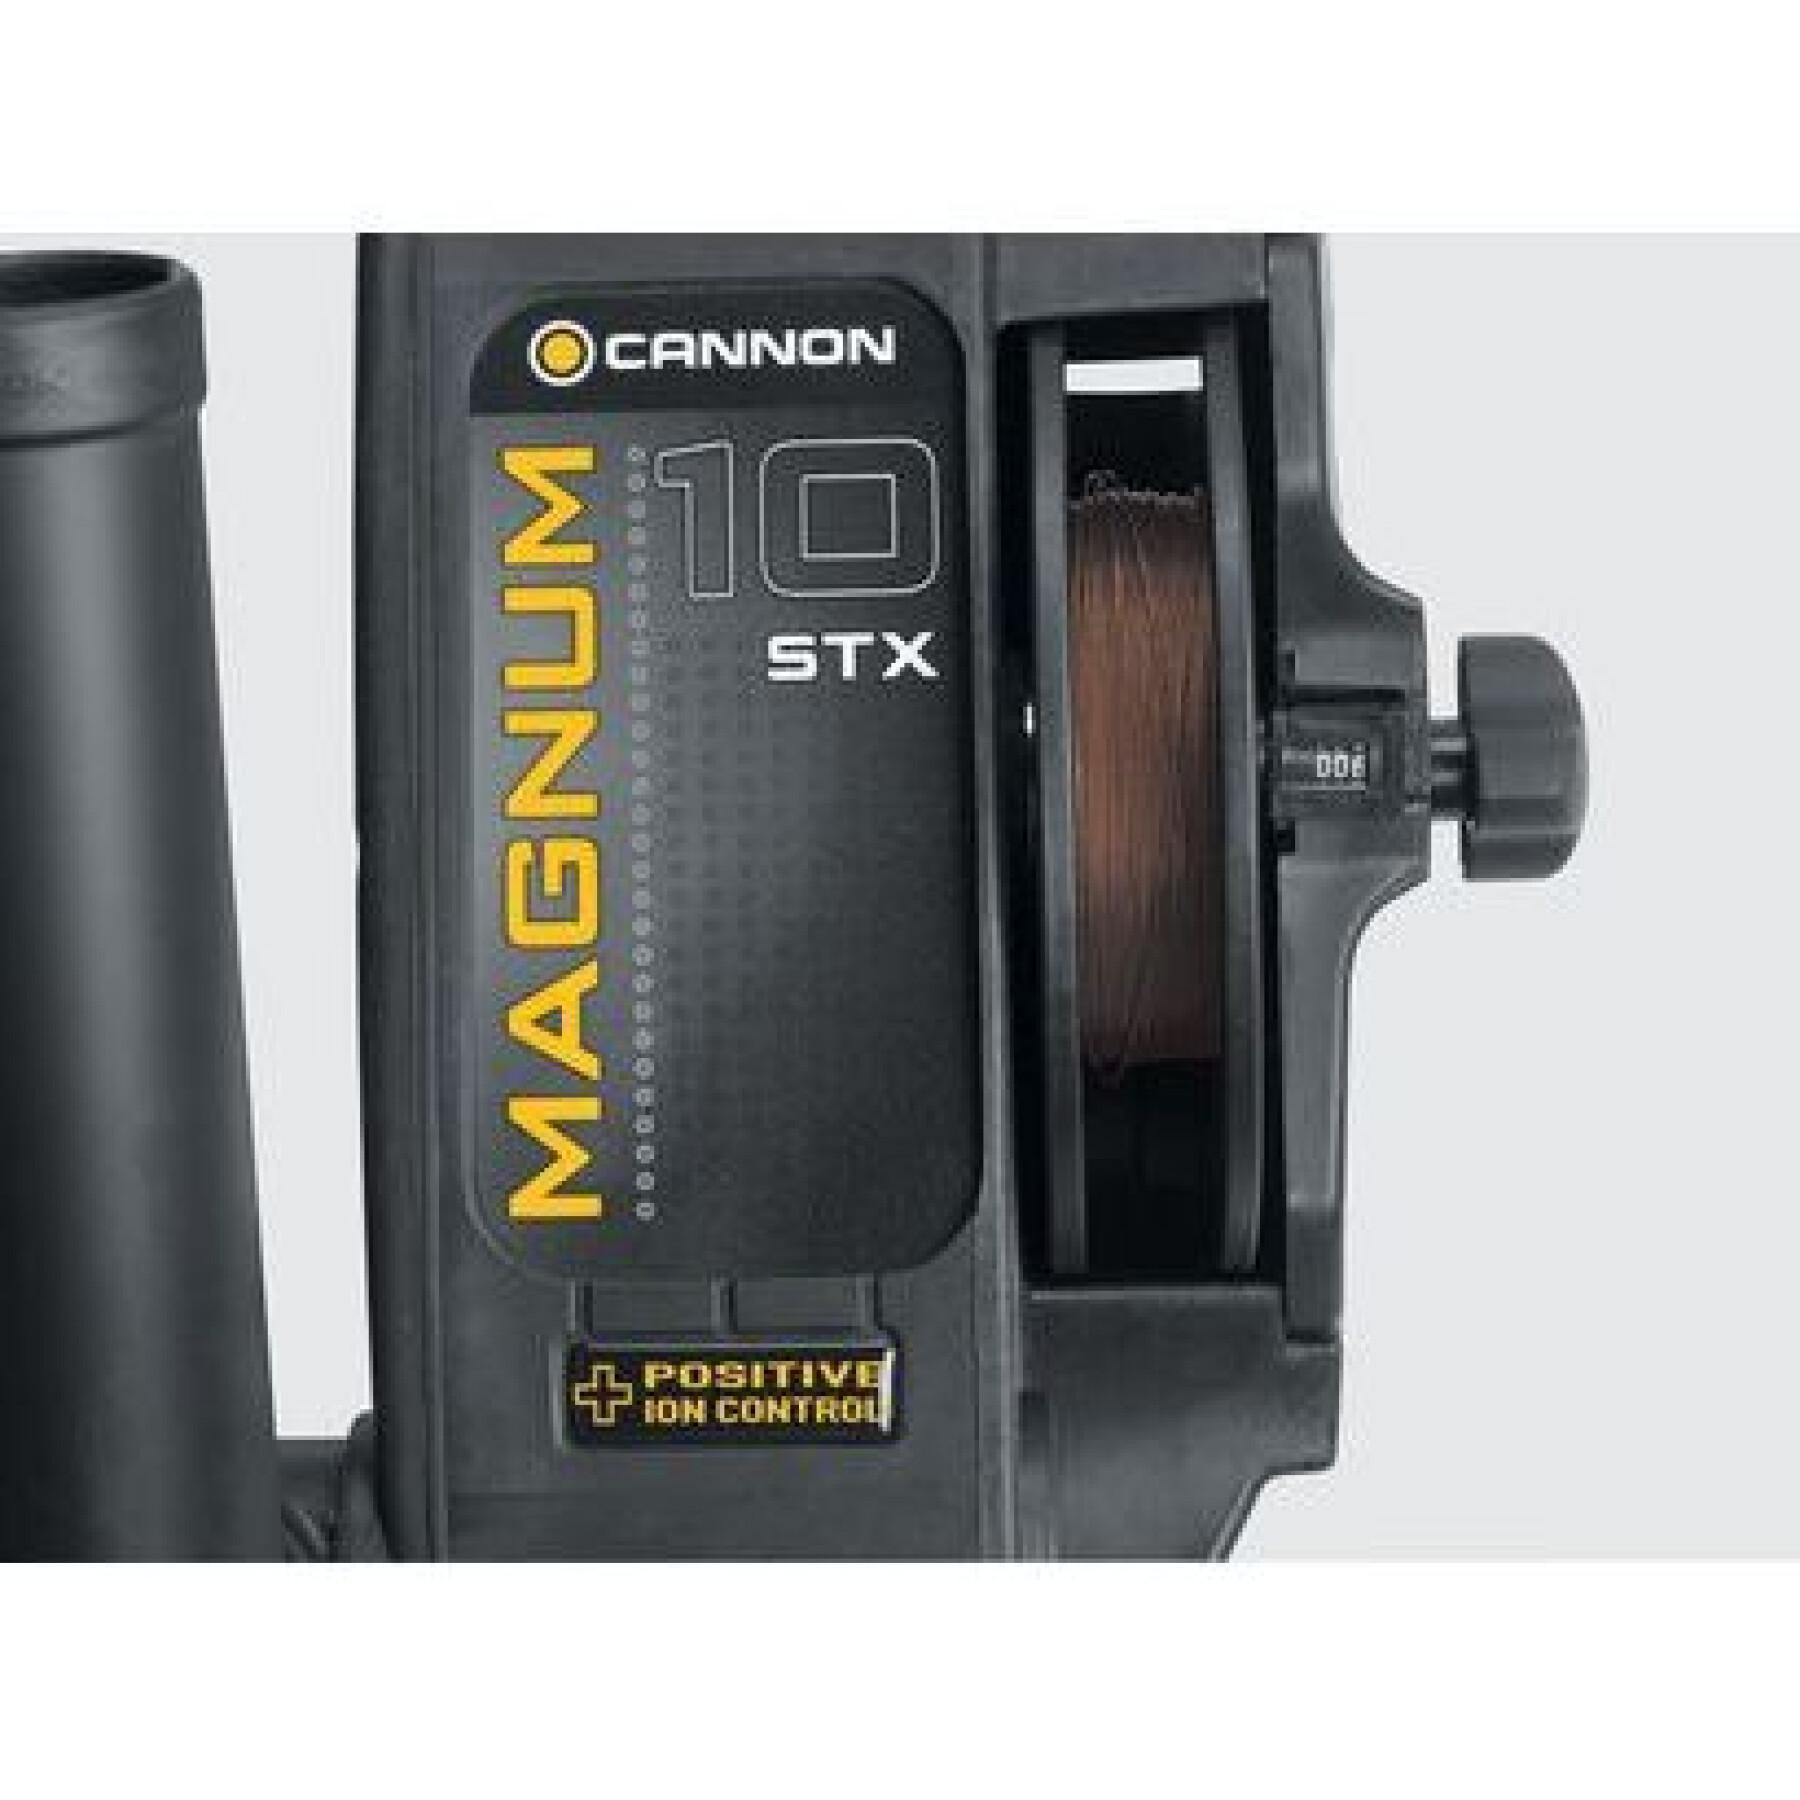 Treuil électrique Cannon Magnum 10 STX